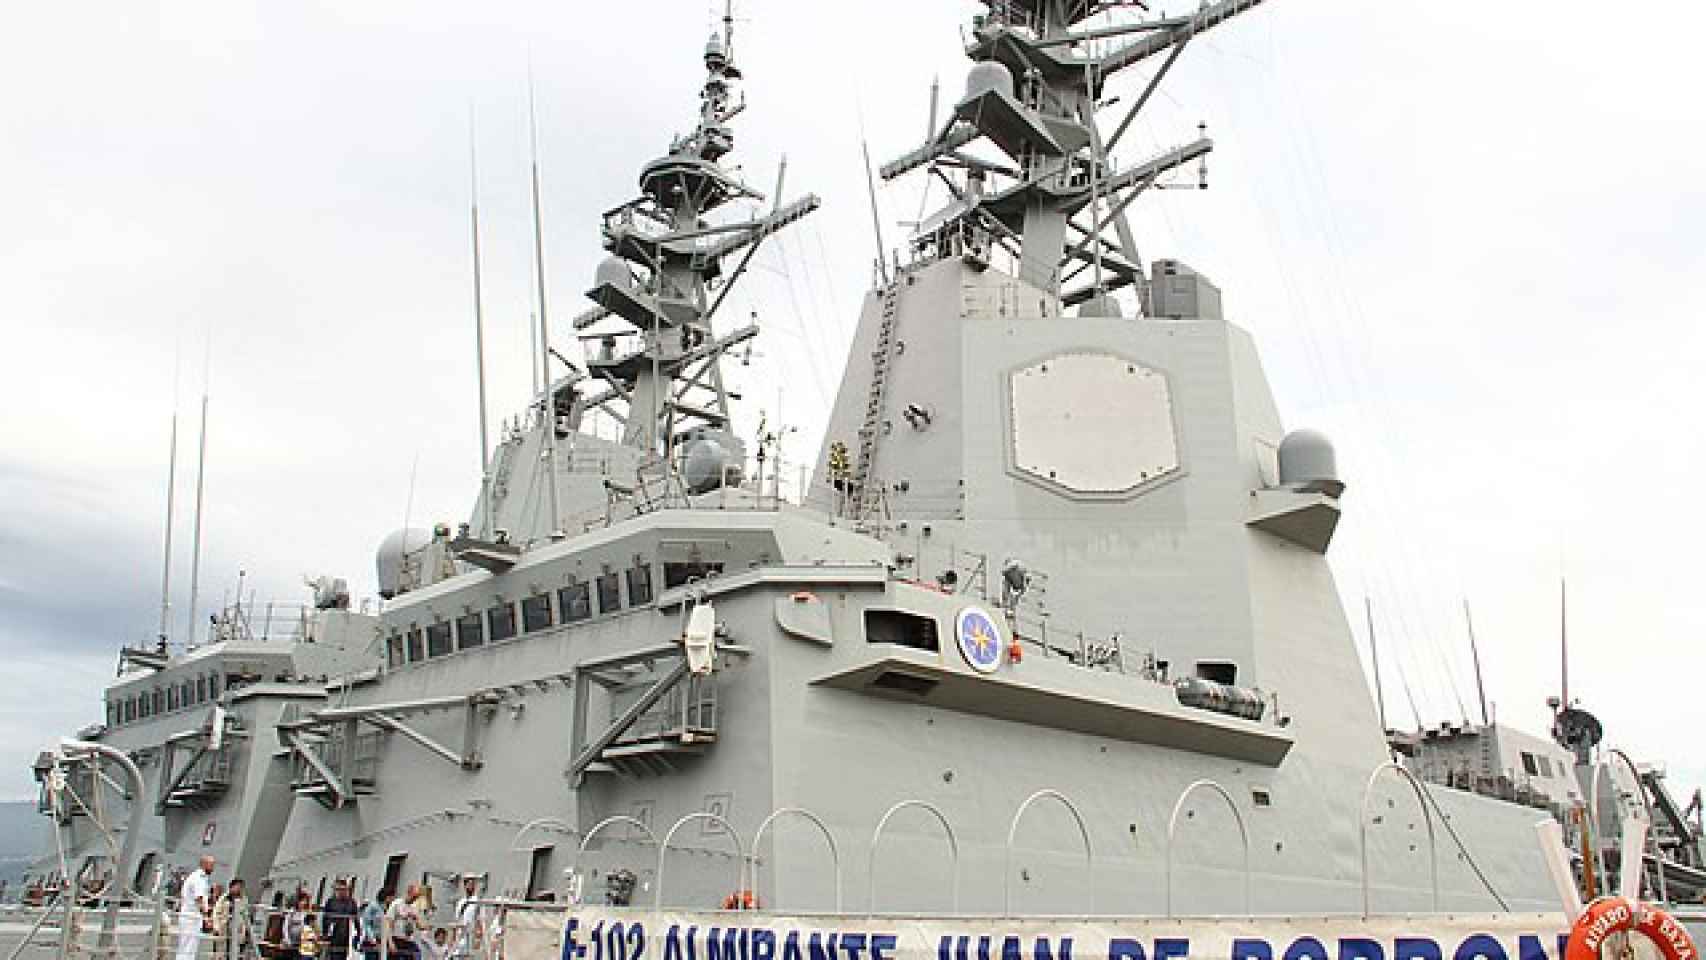 Fragata de la clase F-100 de la Armada Española con el sistema de combate Aegis integrado en su torre principal.